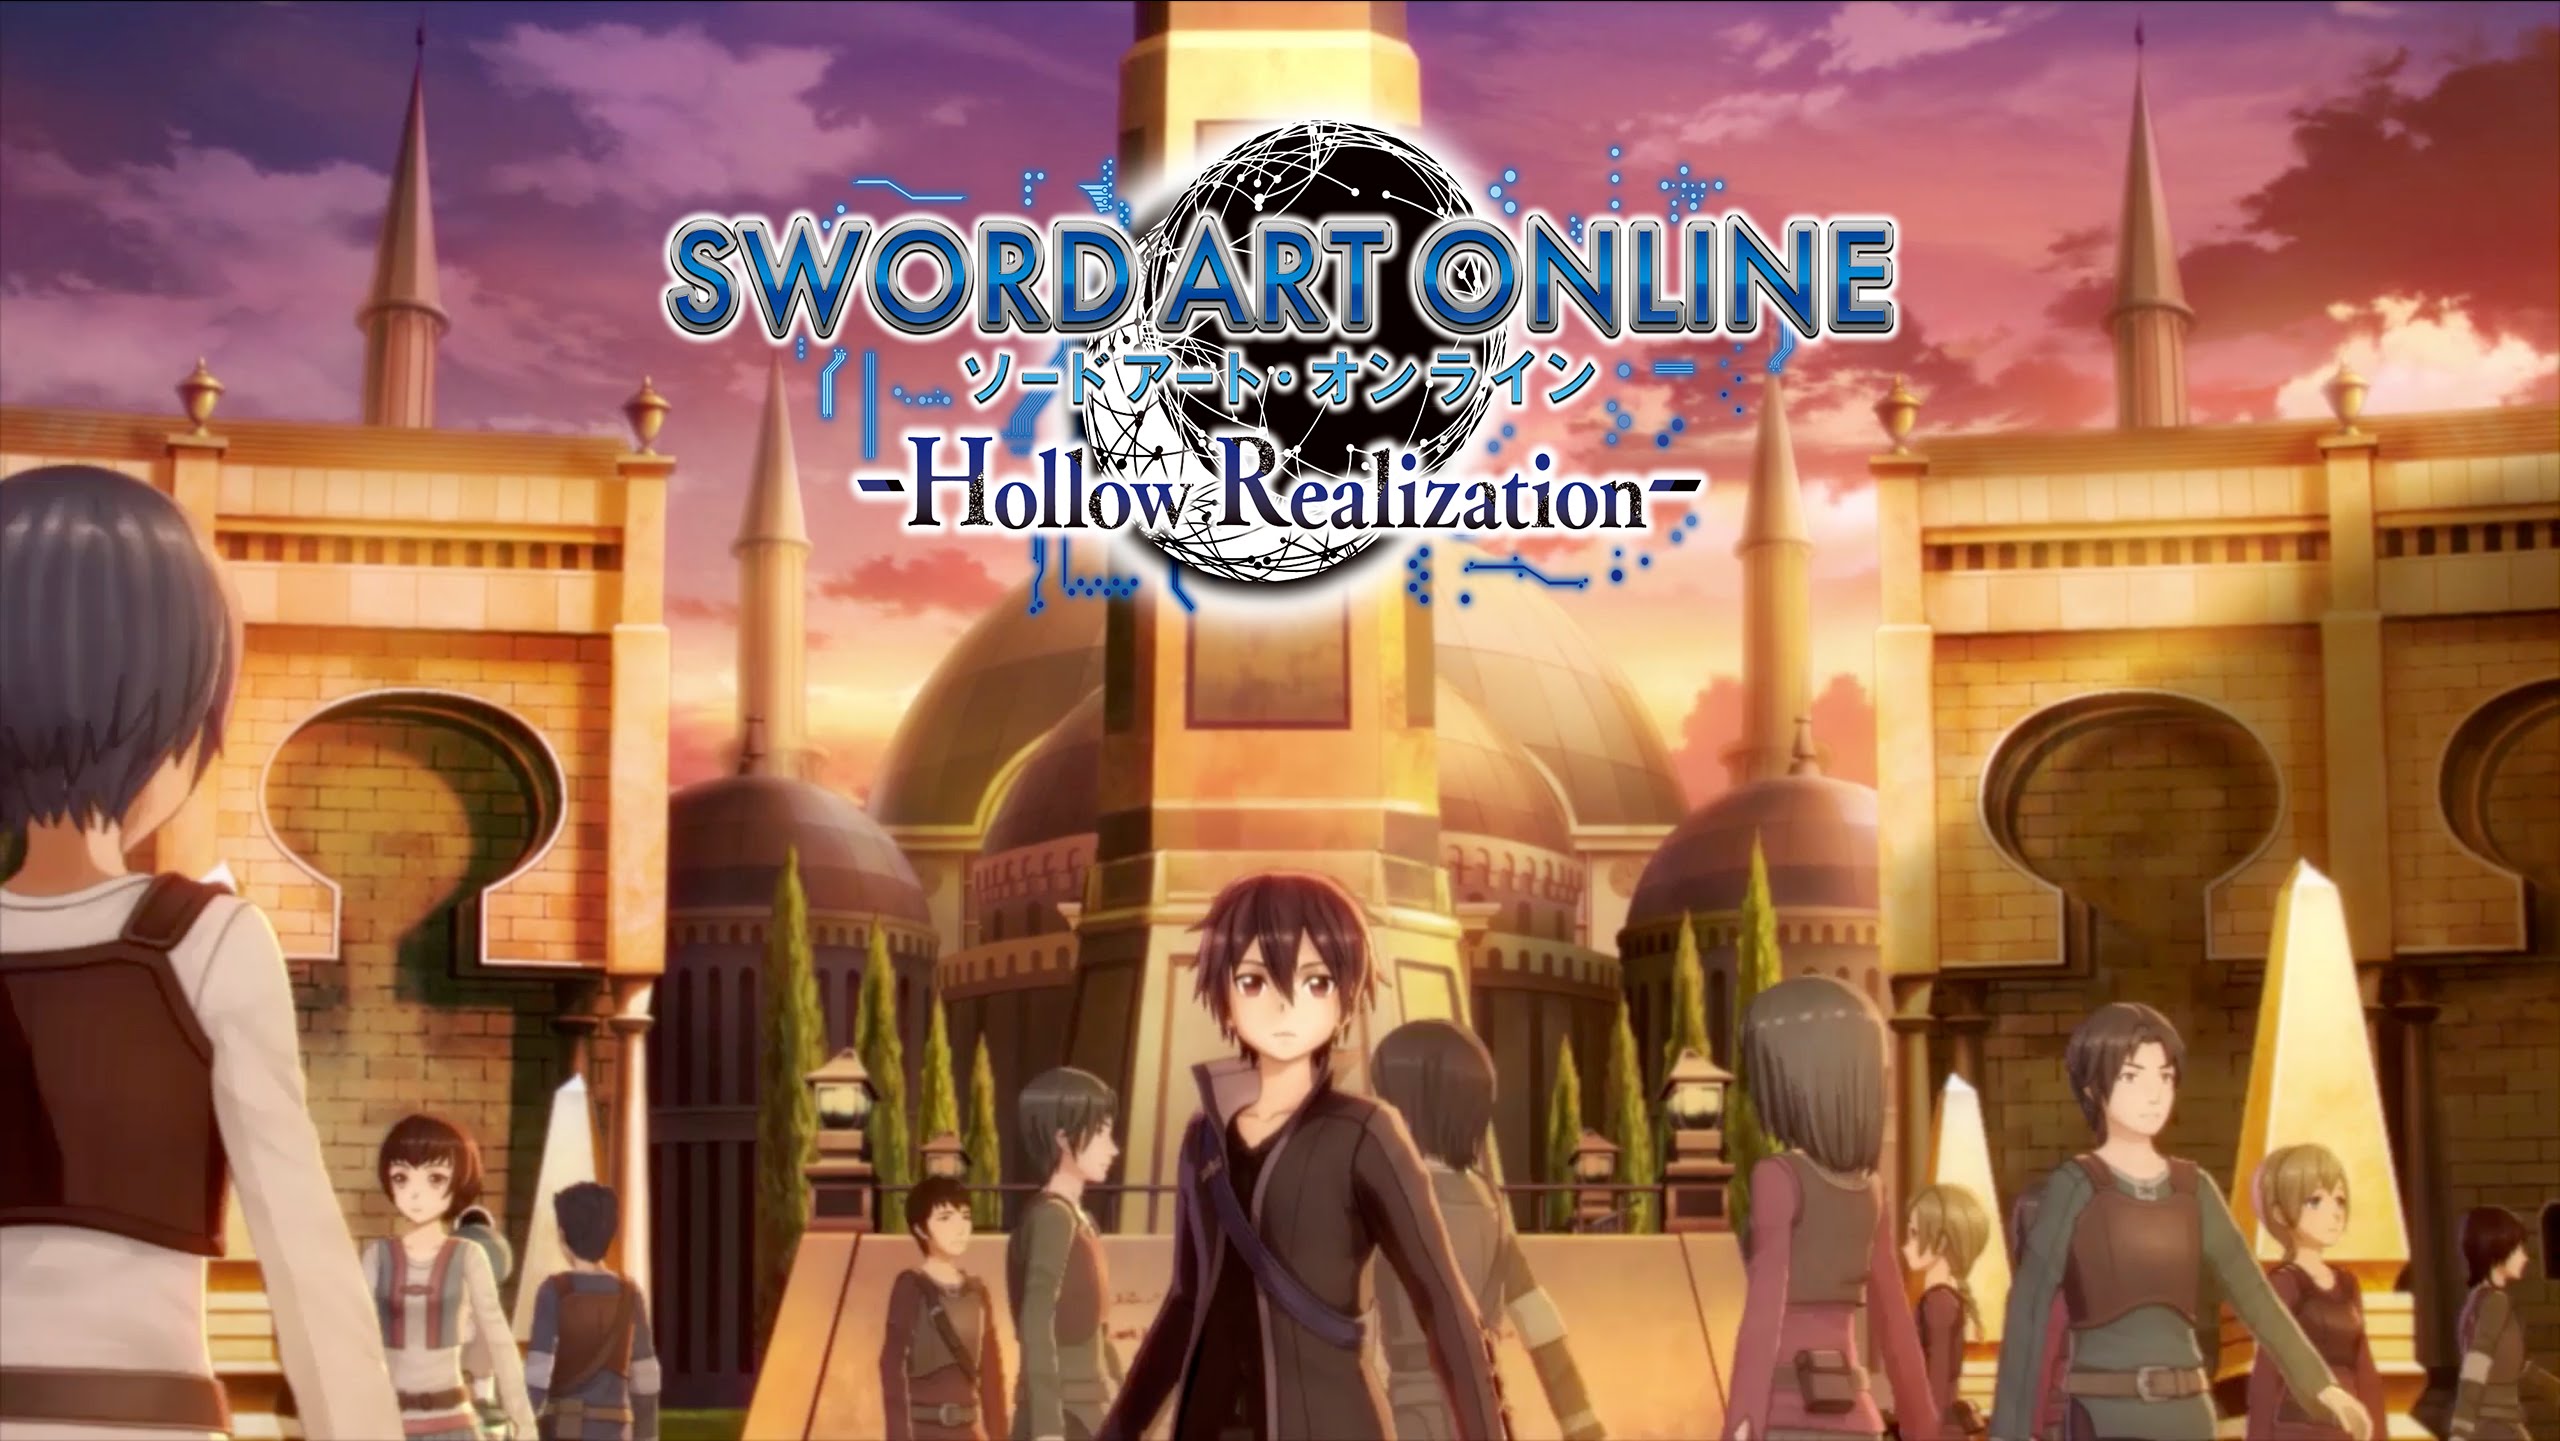 6. Sword Art Online: Hollow Realization - wide 2